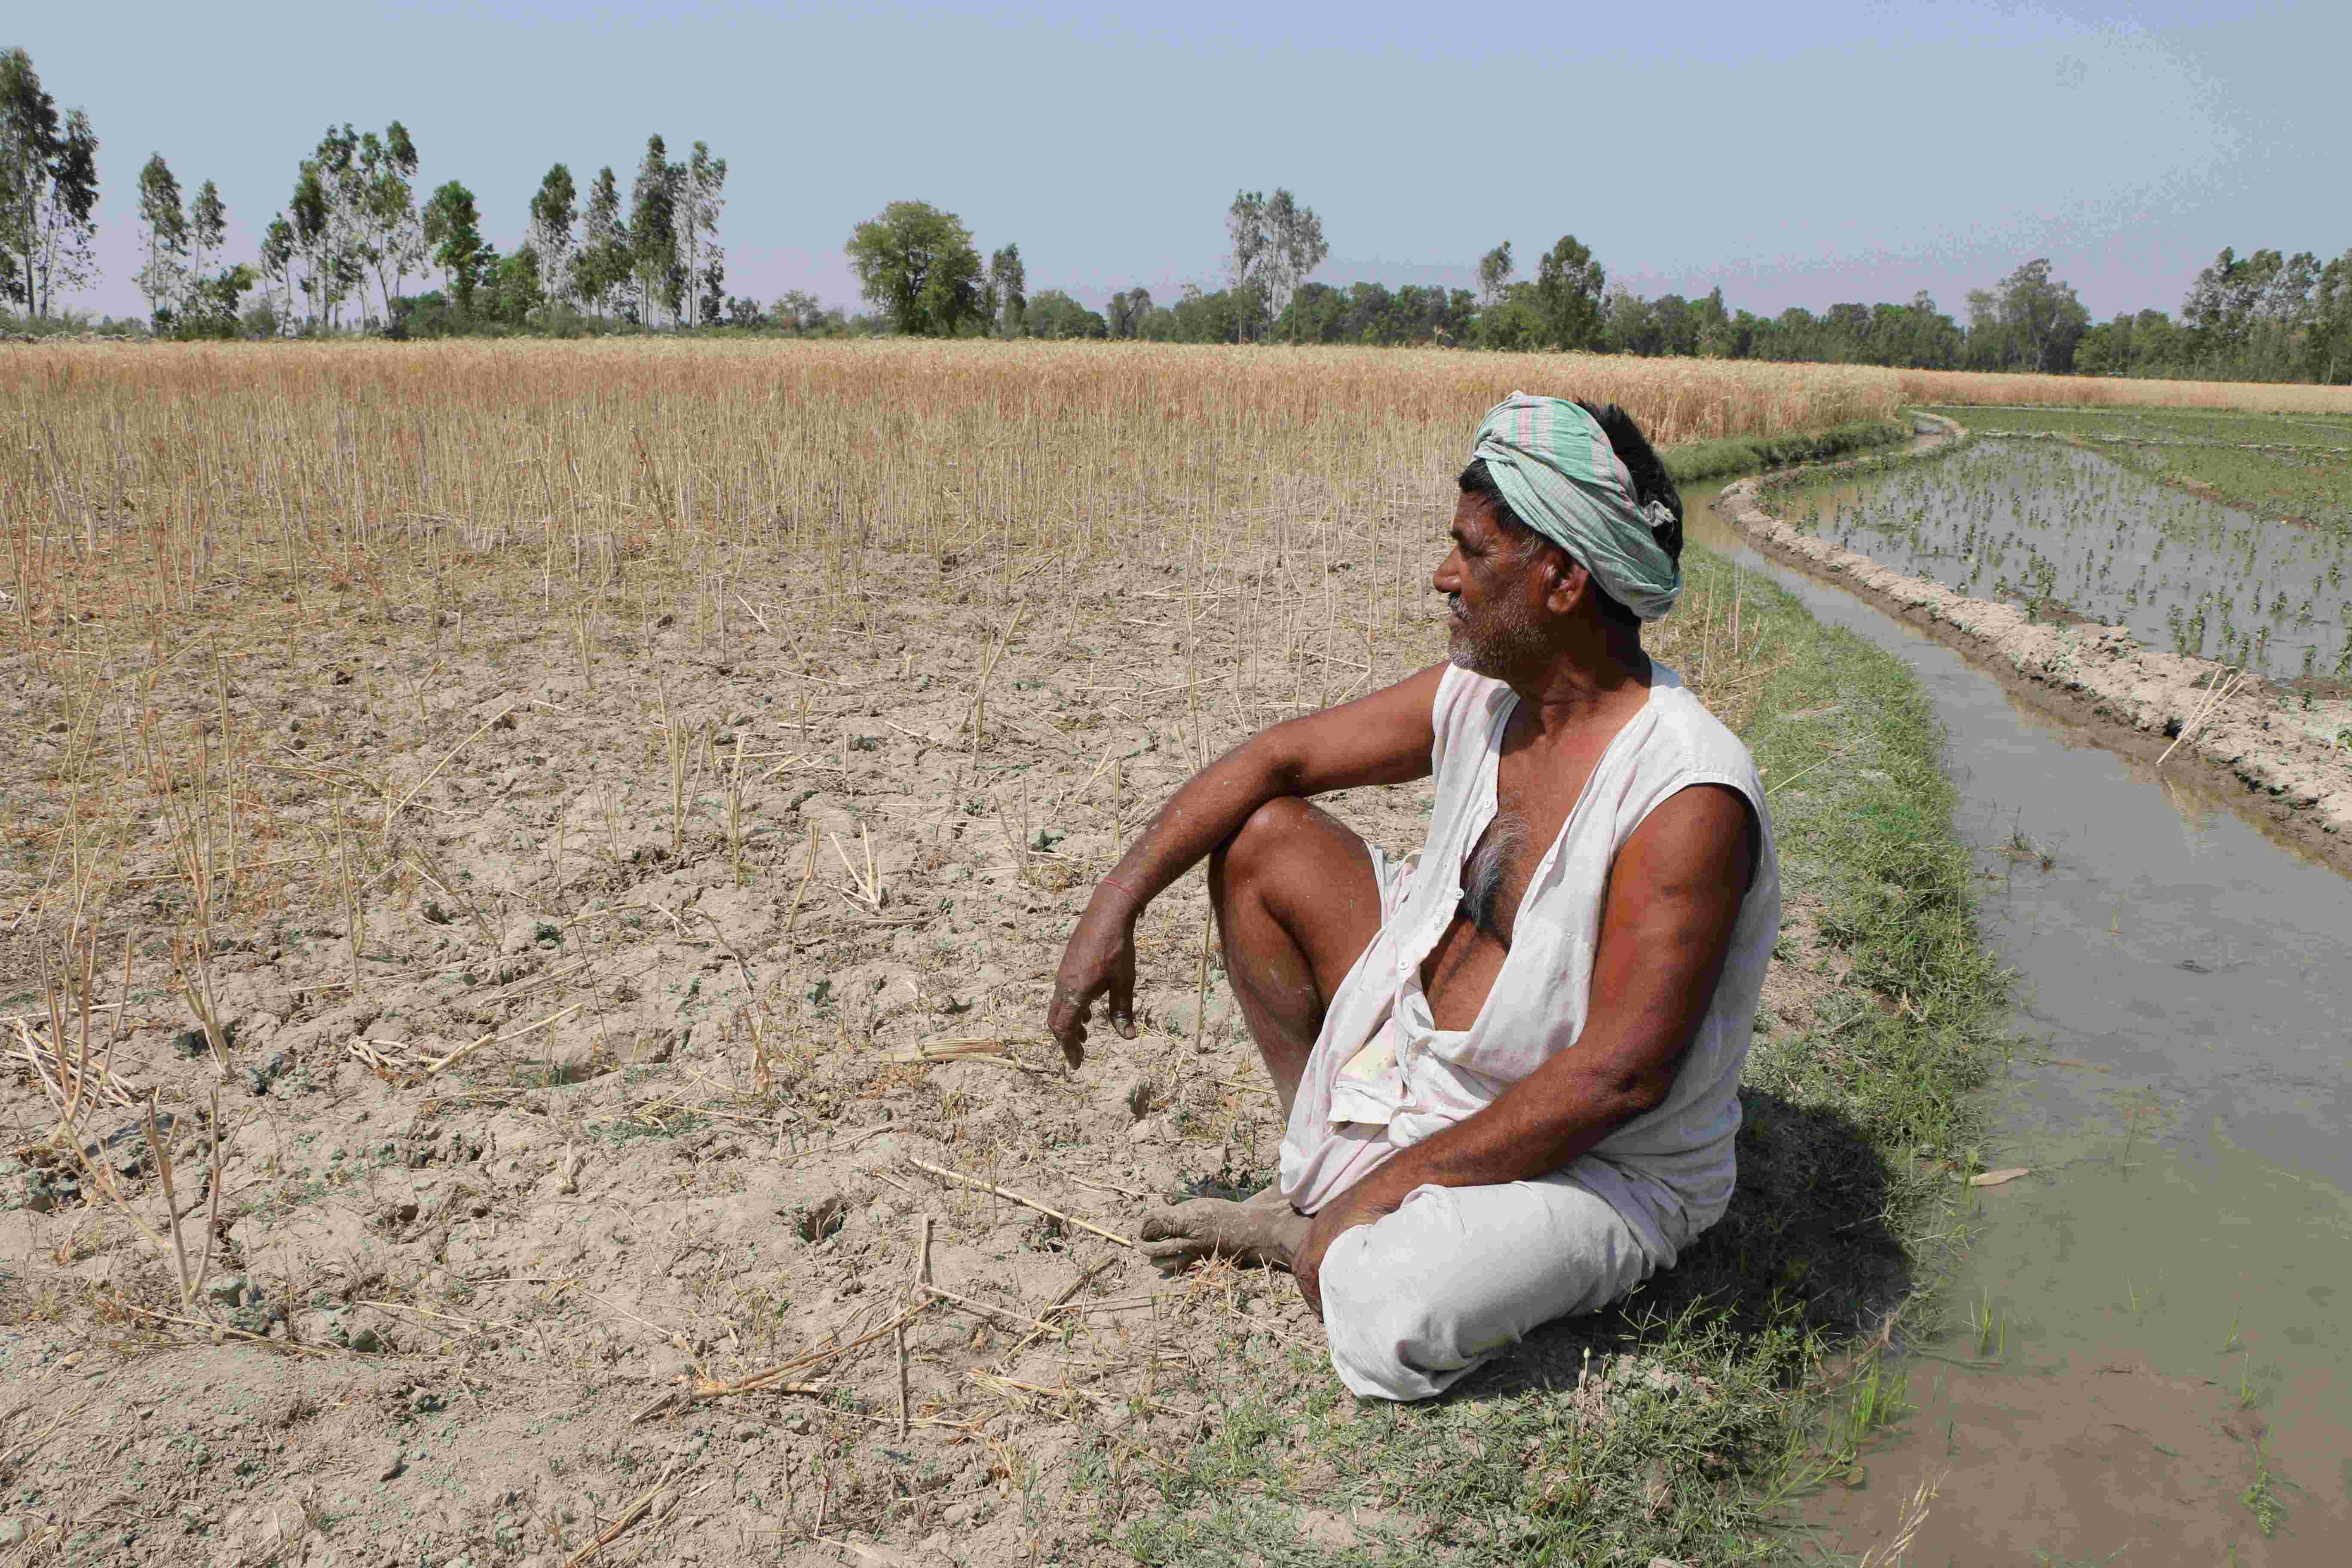 महाजनों और सूदखोरों के चंगुल में फंसे किसानों को योगी सरकार से उम्मीद